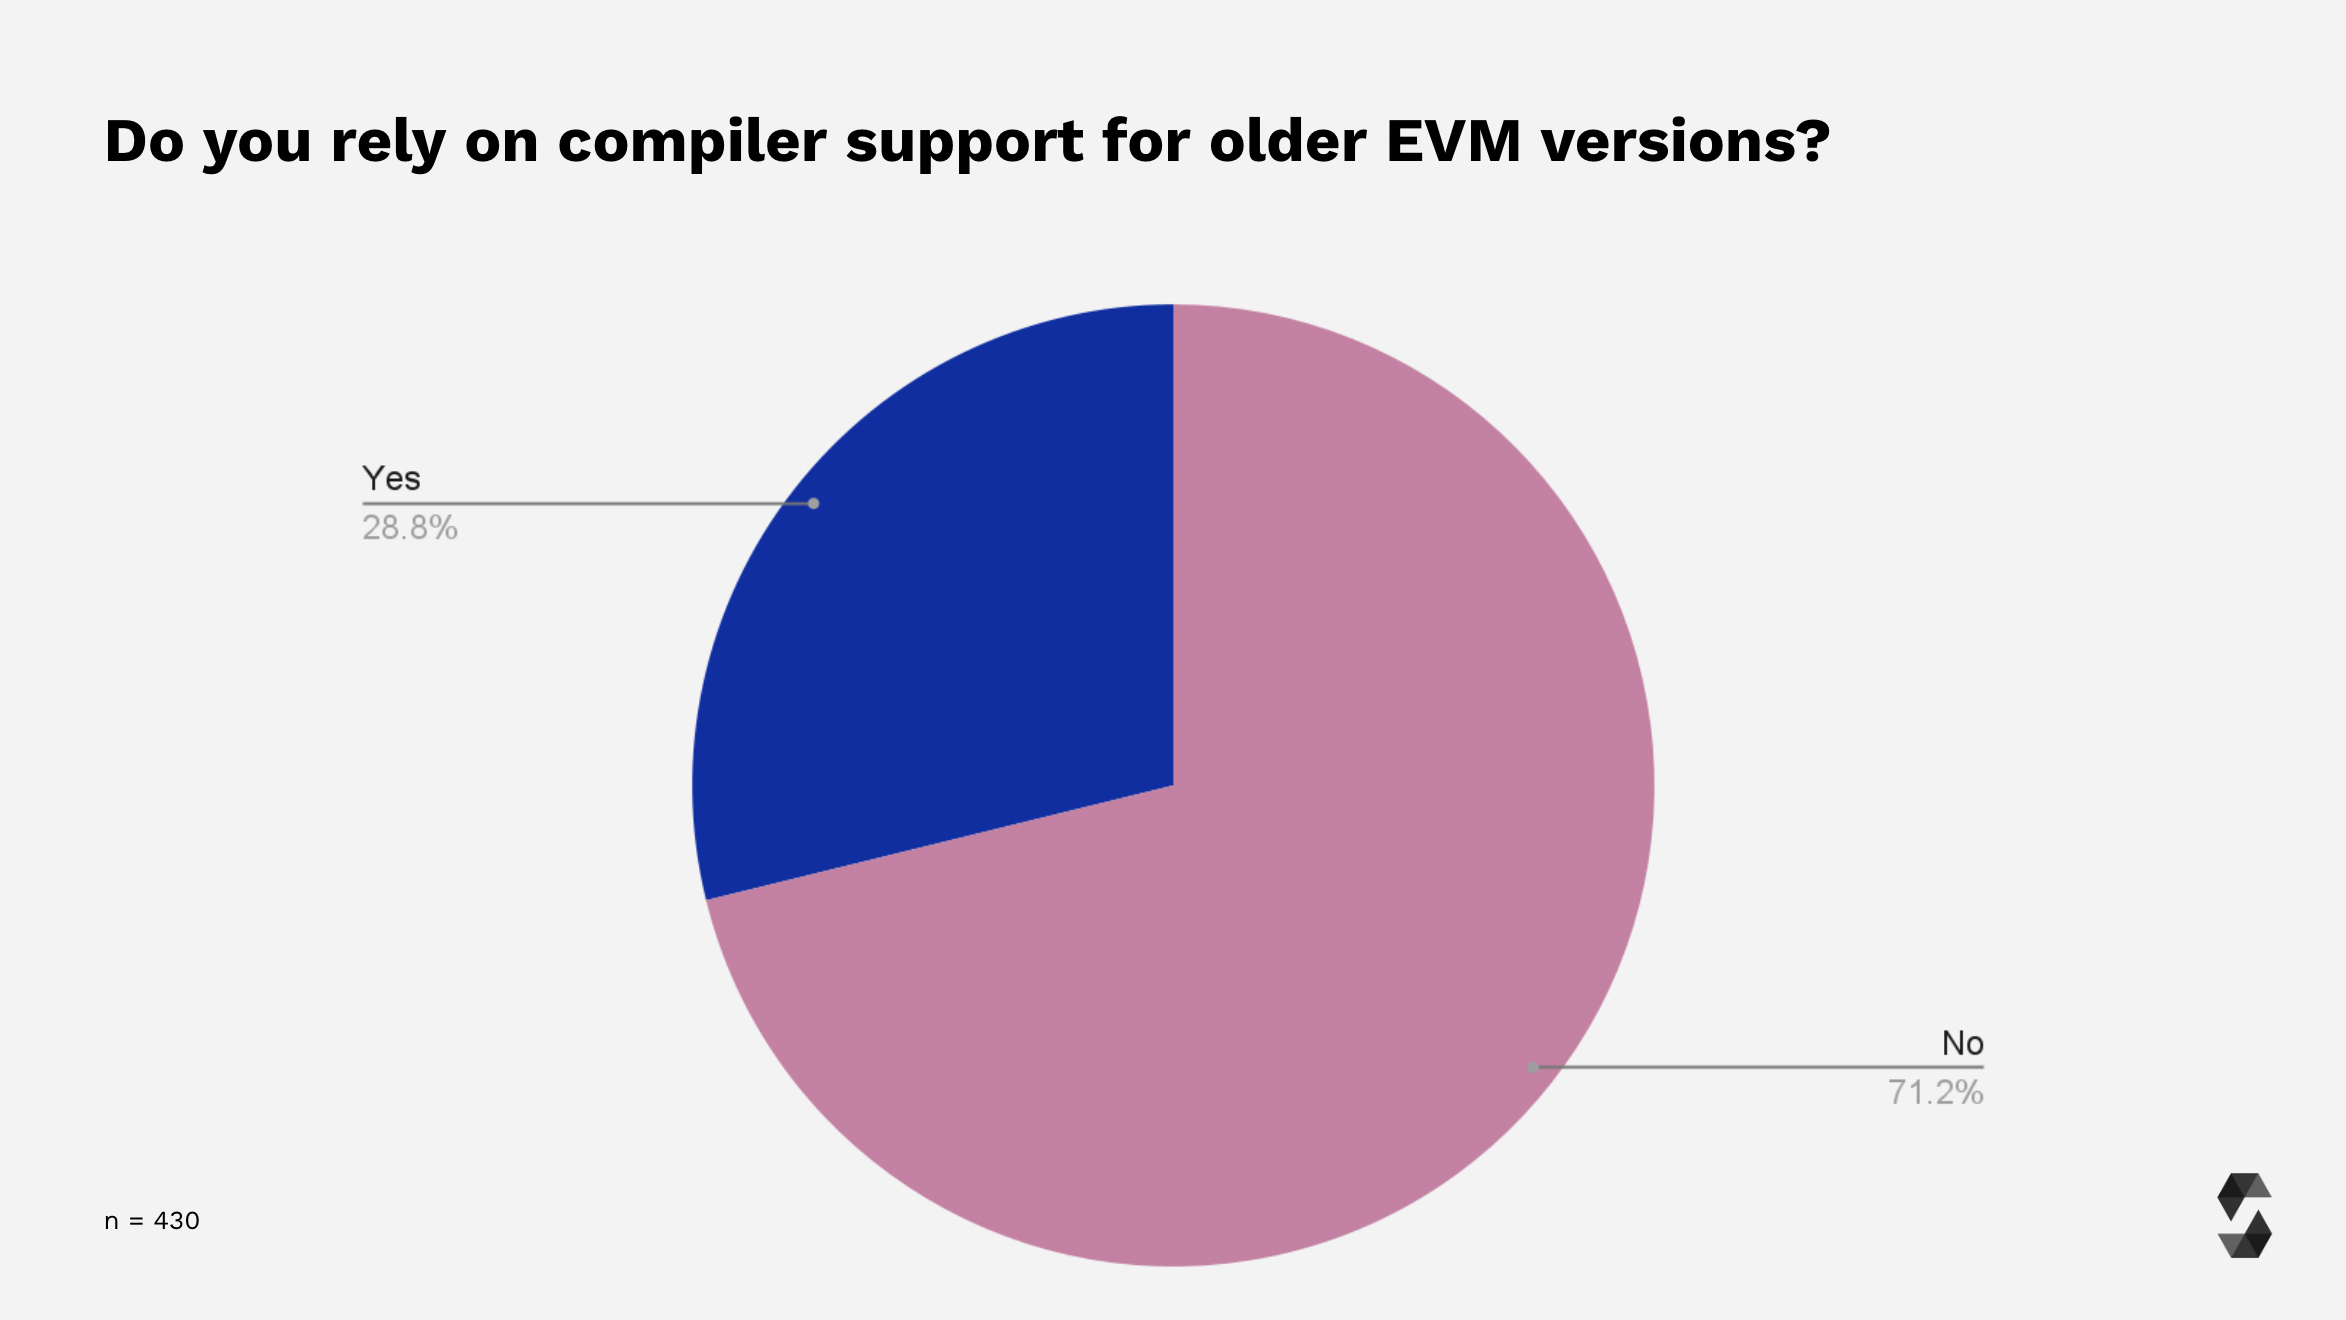 Support for older EVM versions